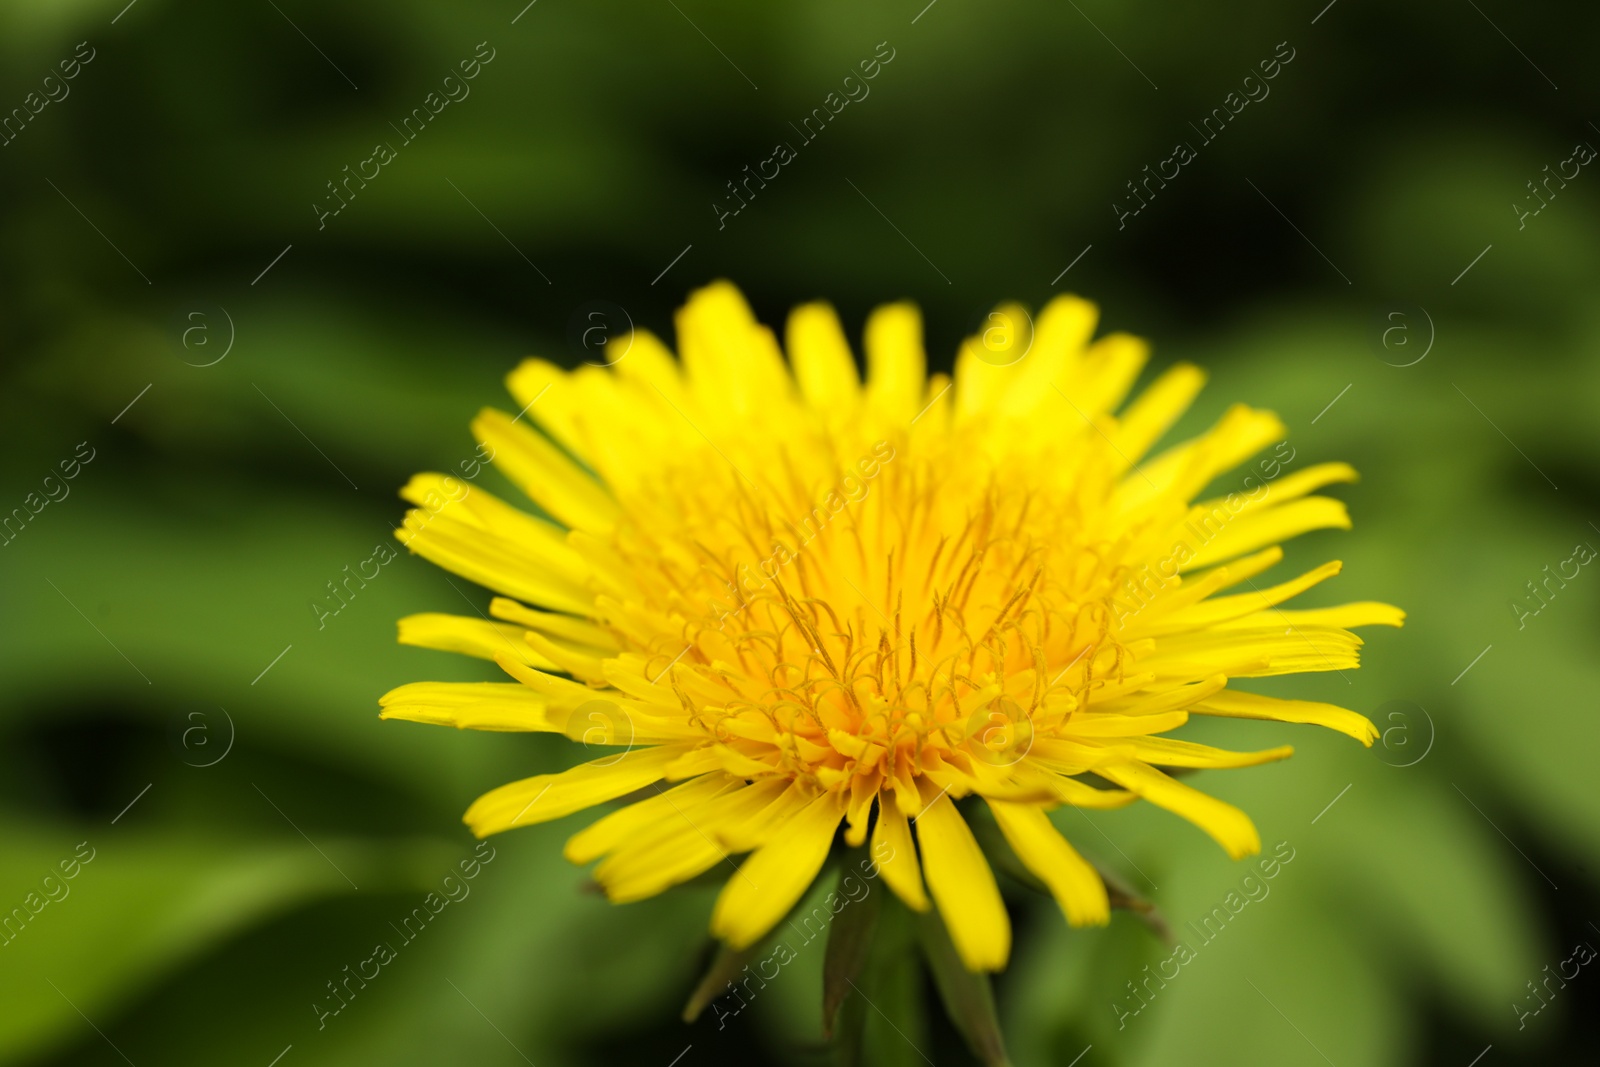 Photo of Beautiful yellow dandelion growing outdoors, closeup view